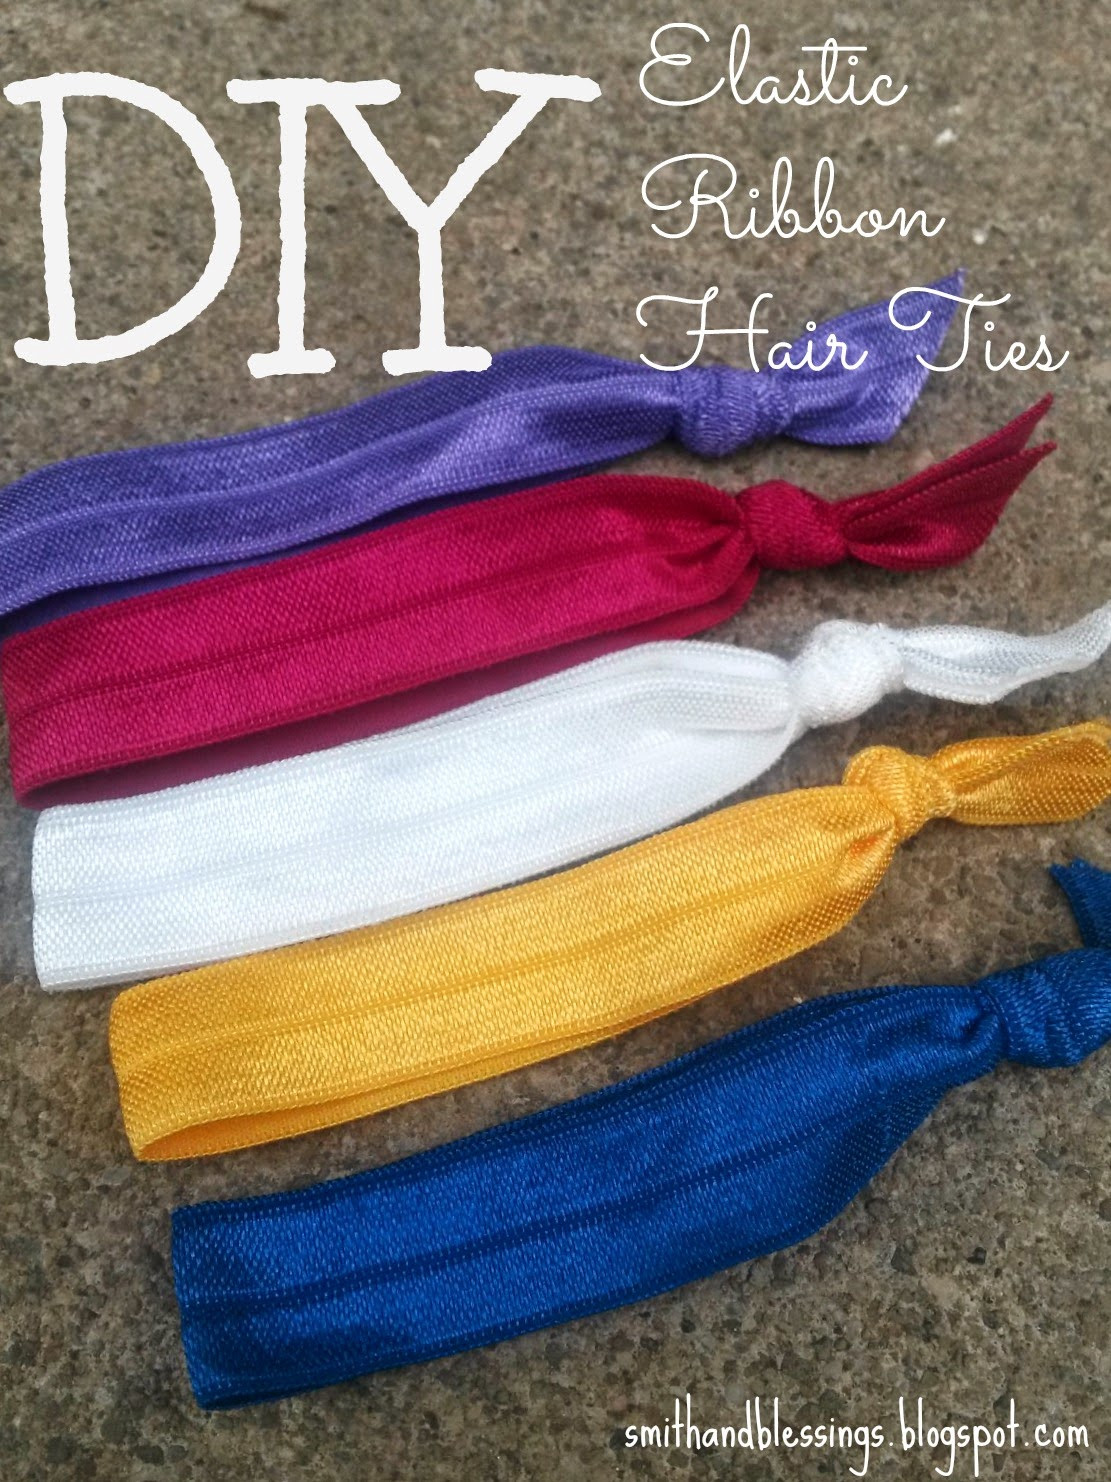 Ribbon Hair Ties DIY
 Smith and Blessings Fun Friday DIY Elastic Ribbon Hair Ties